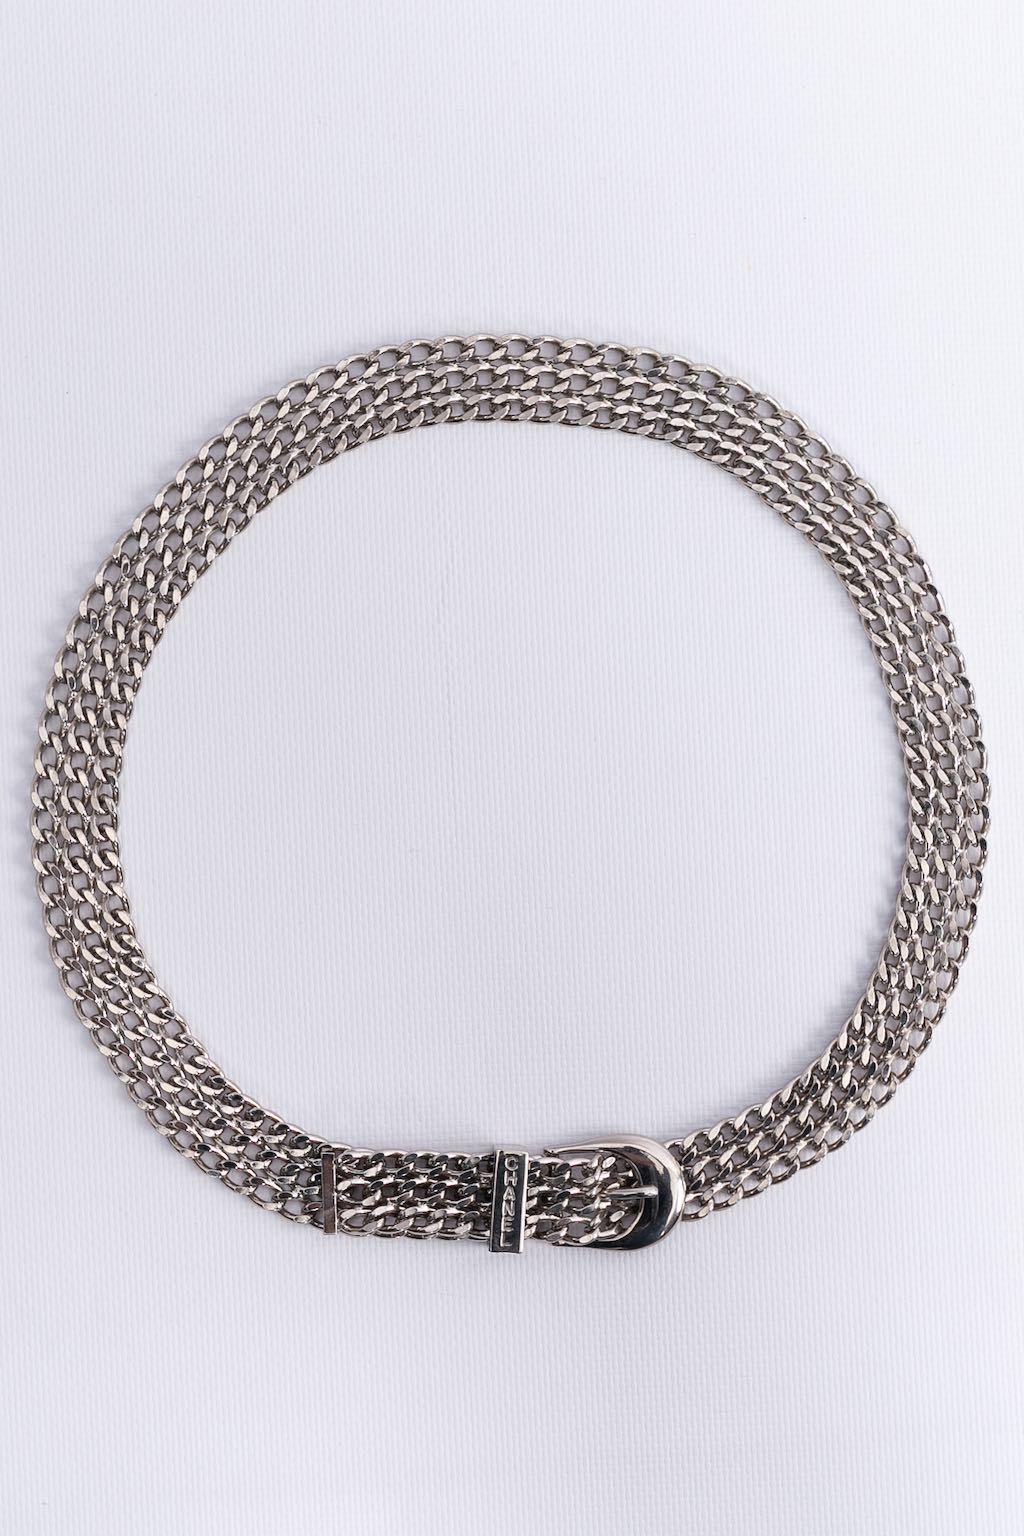 Women's Chanel Silver Plated Flexible Belt